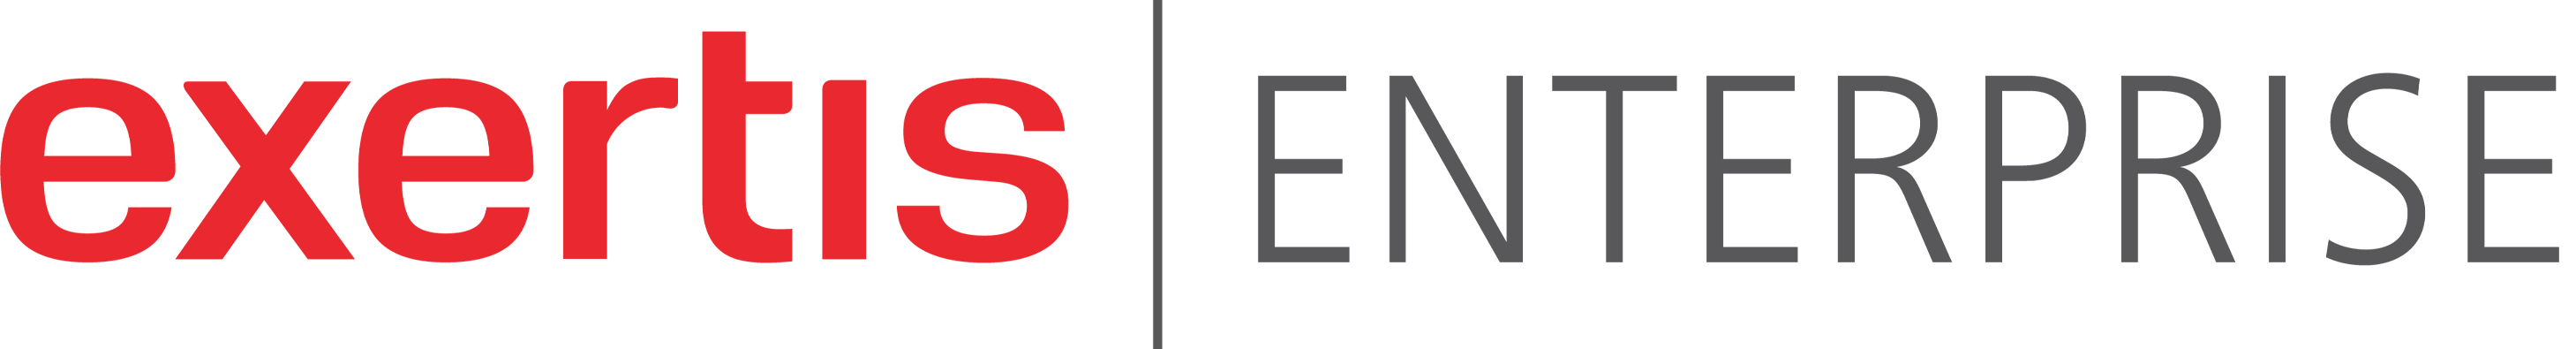 Exertis Enterprise logo color